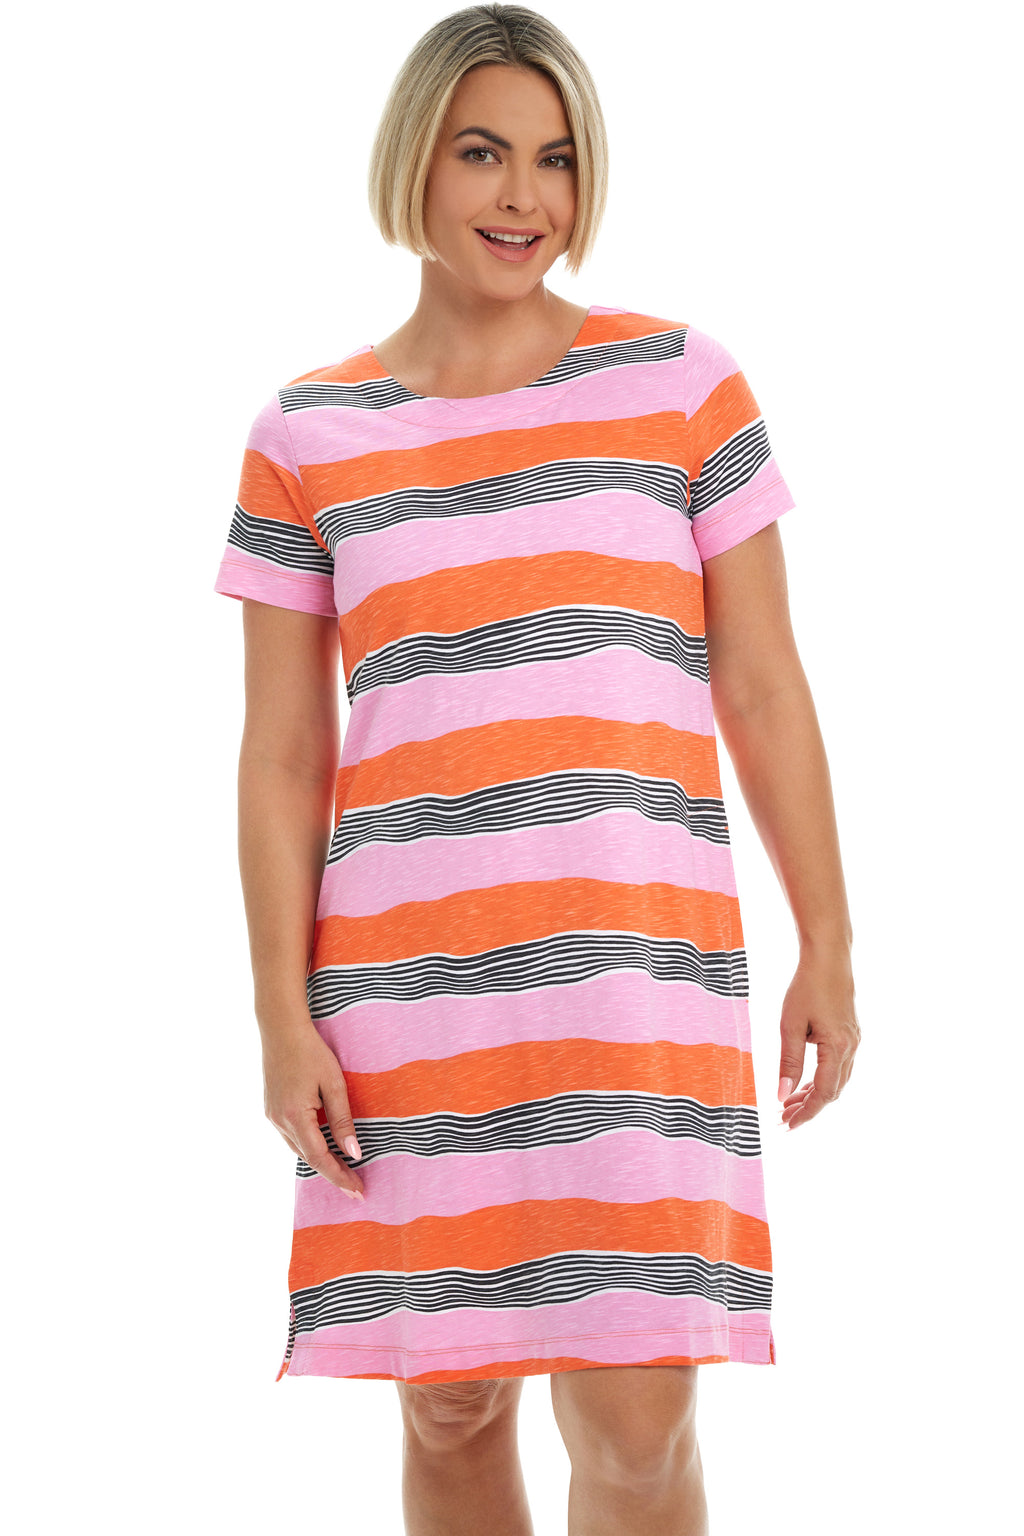 Sunny Stripes Cotton Dress